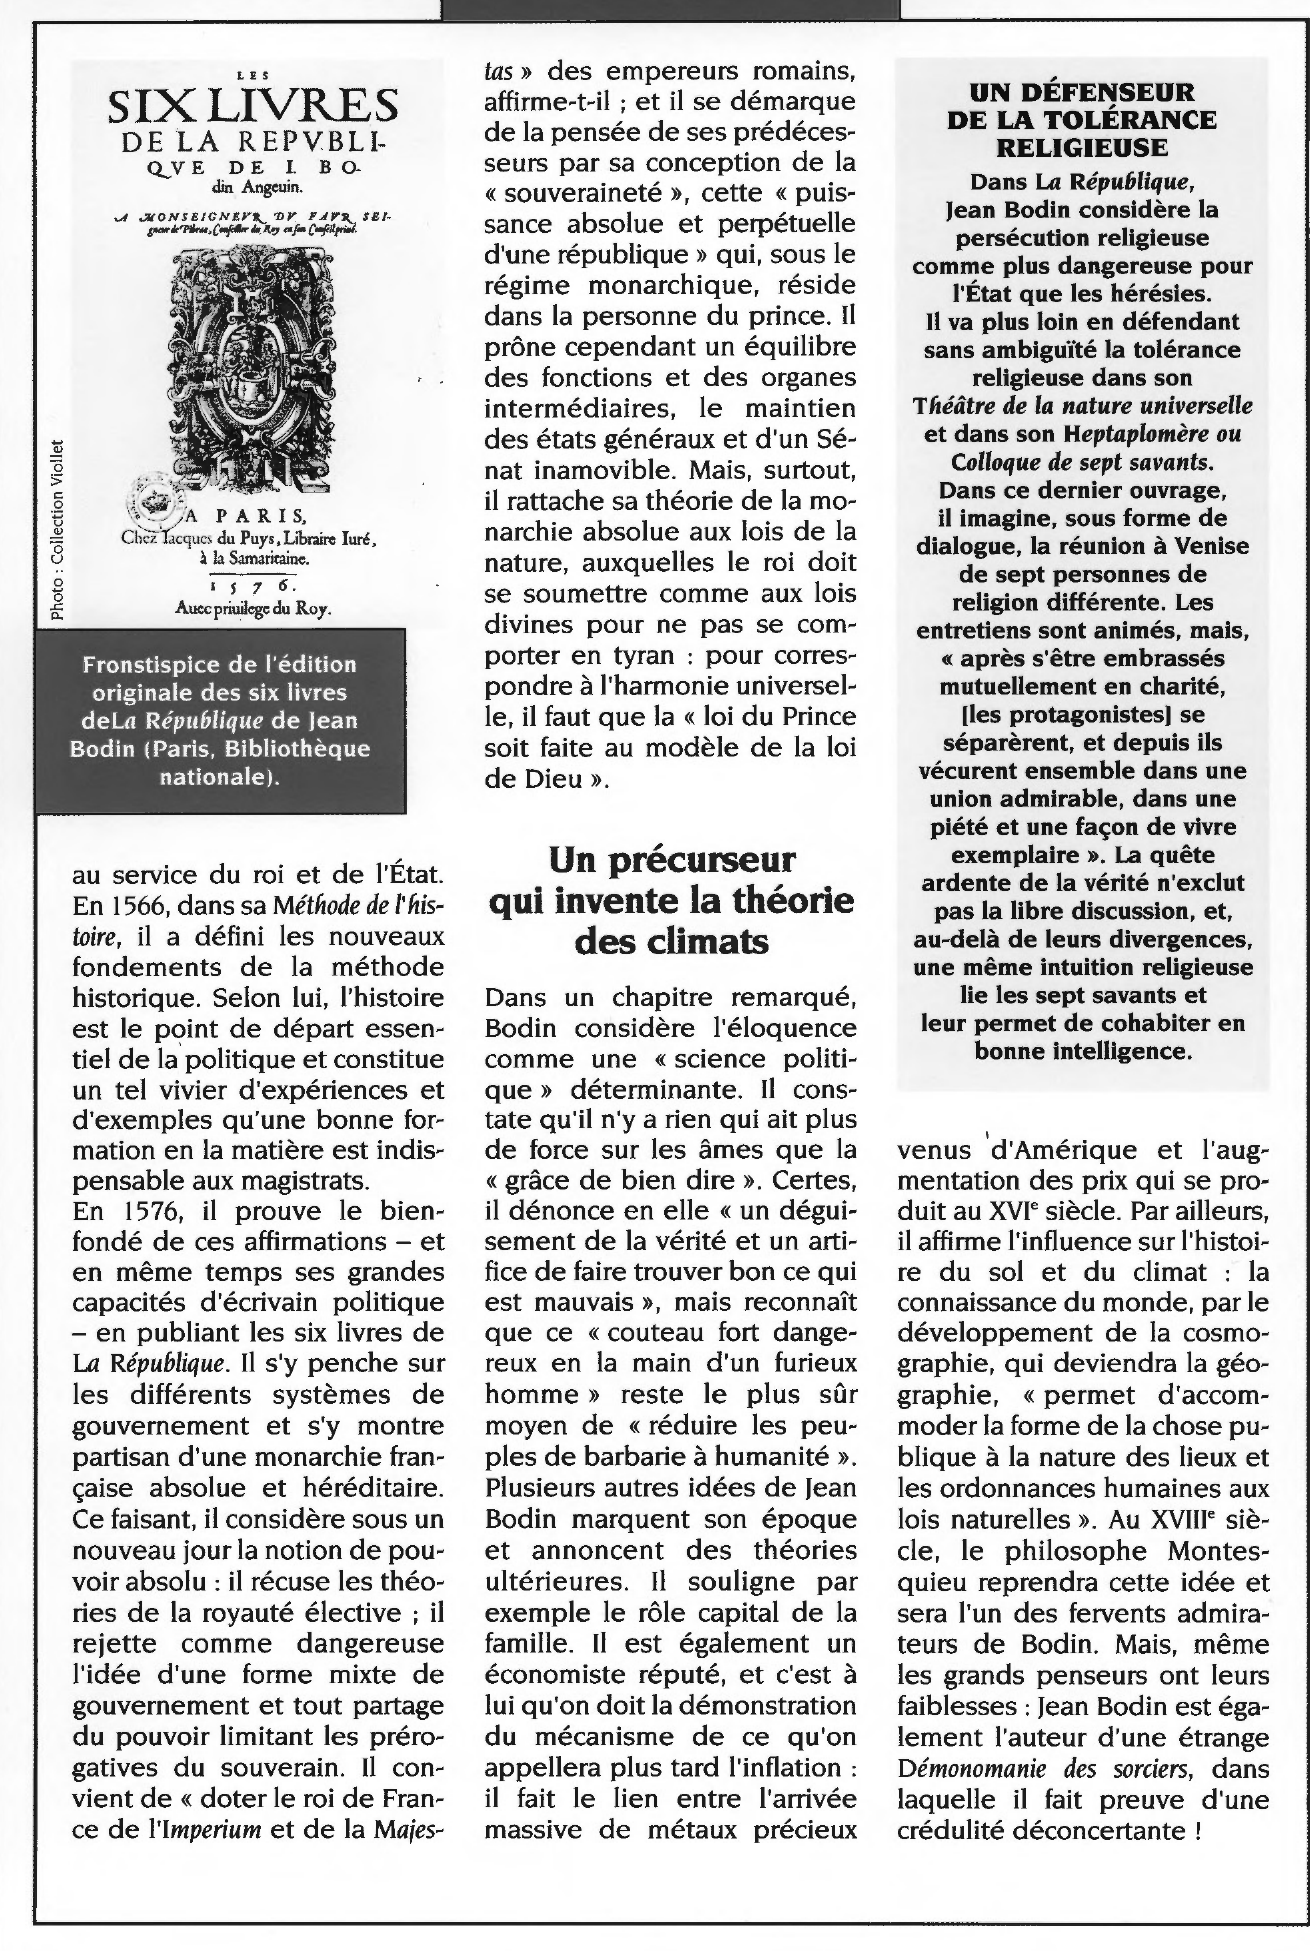 Prévisualisation du document « La République » de Jean Bodin